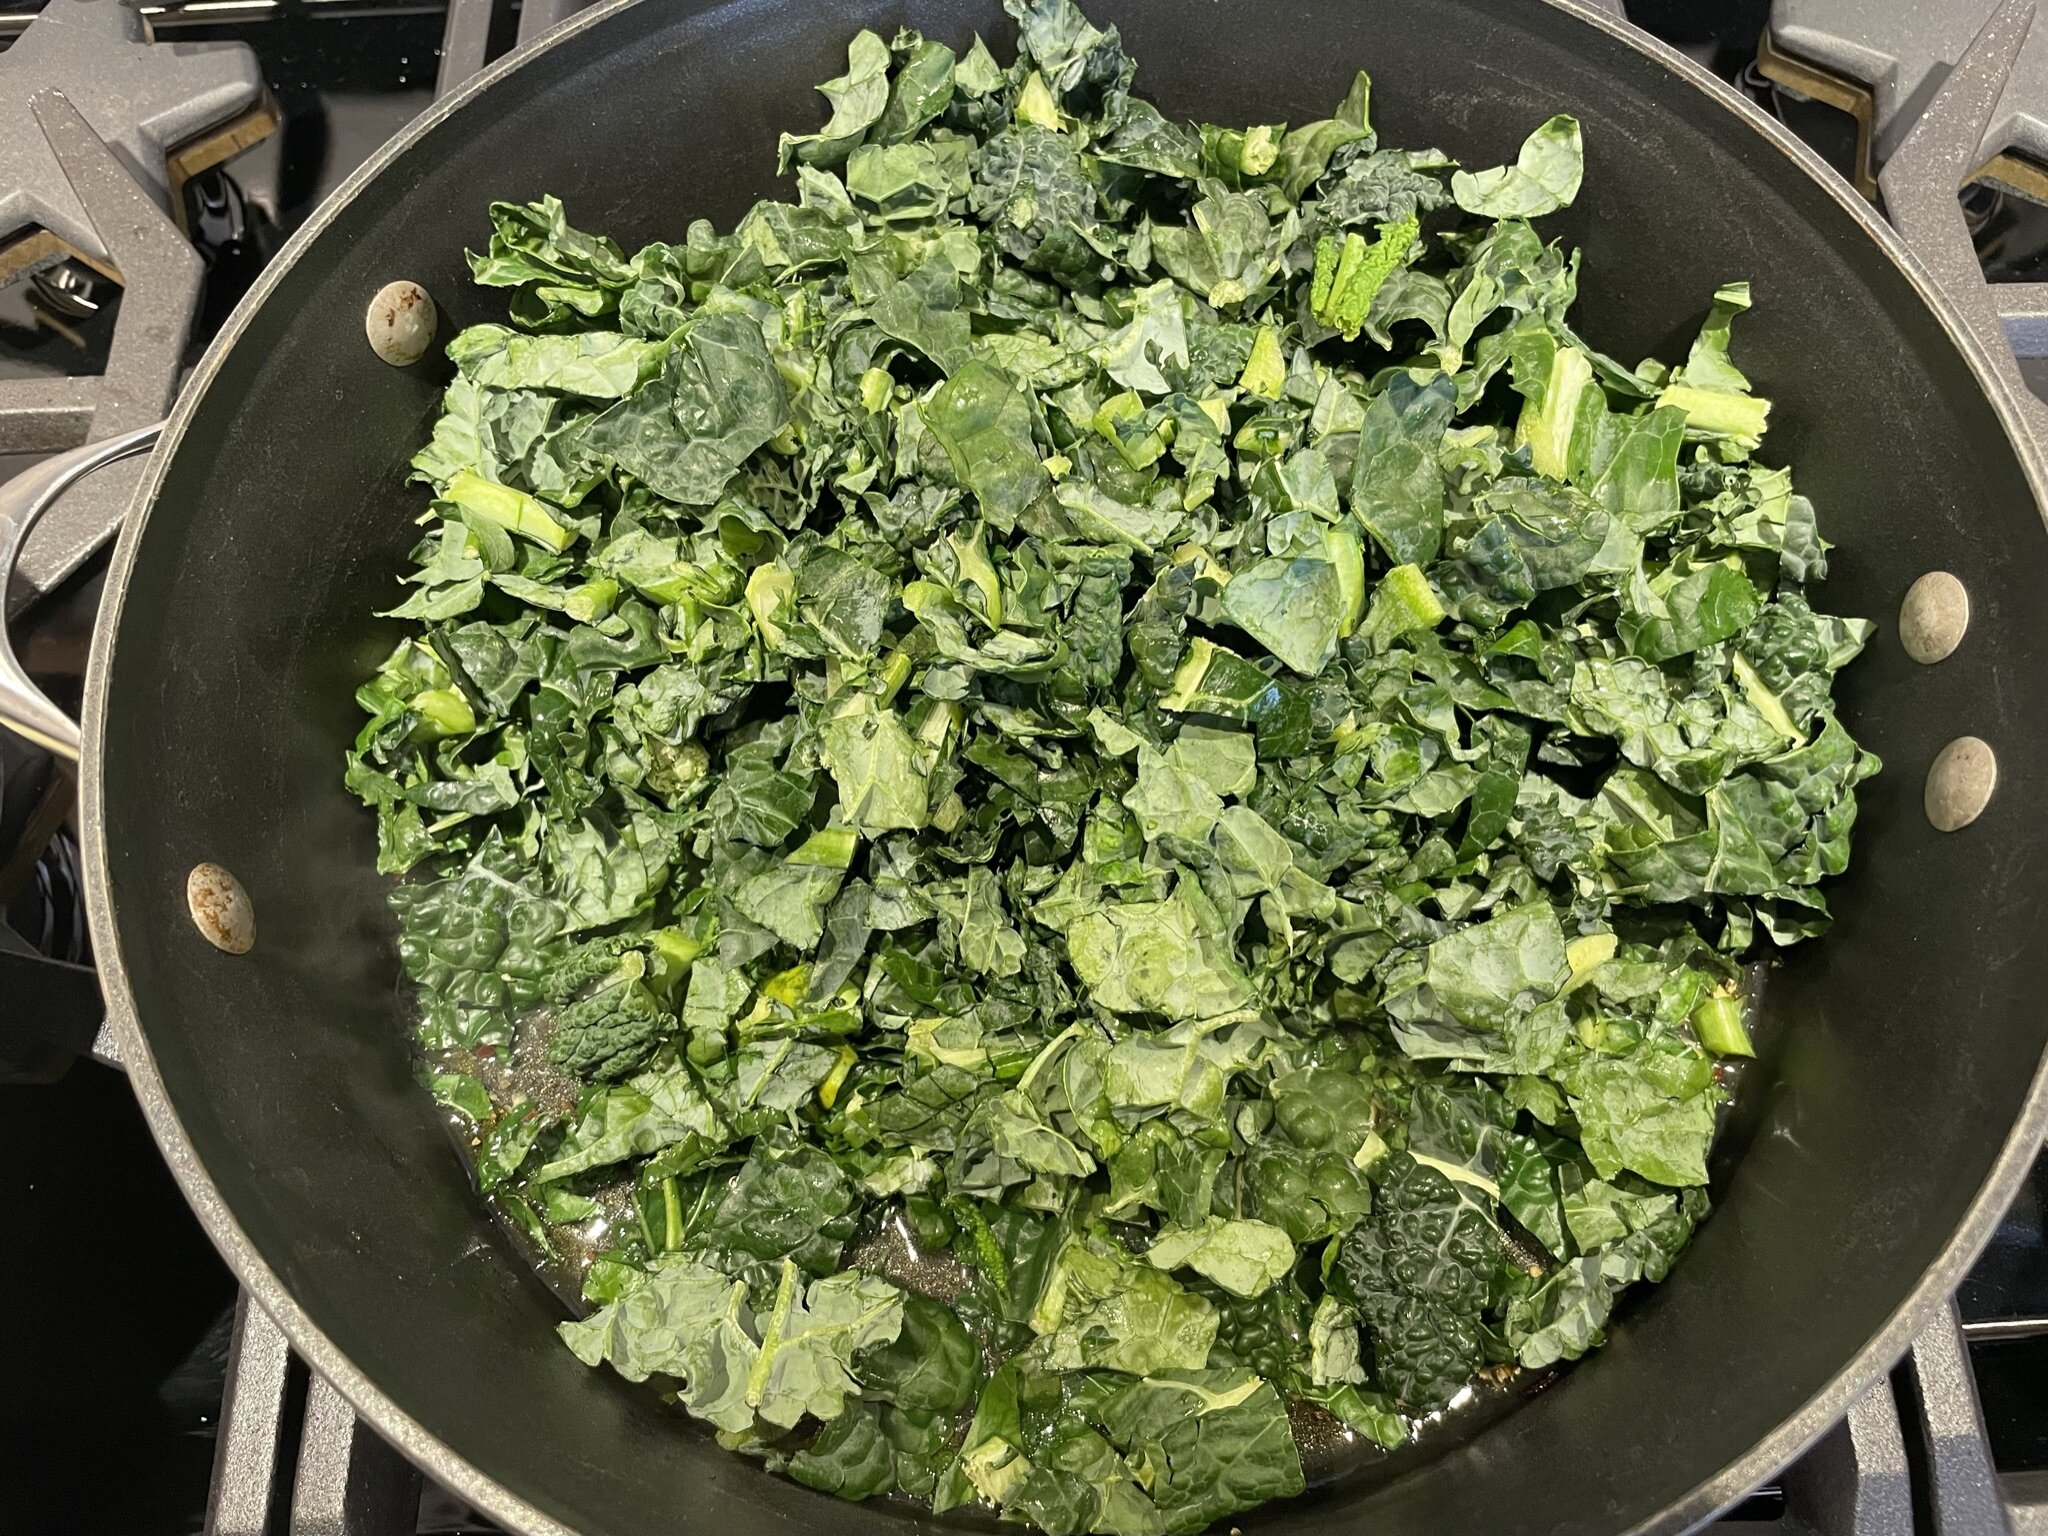 Add chopped kale.